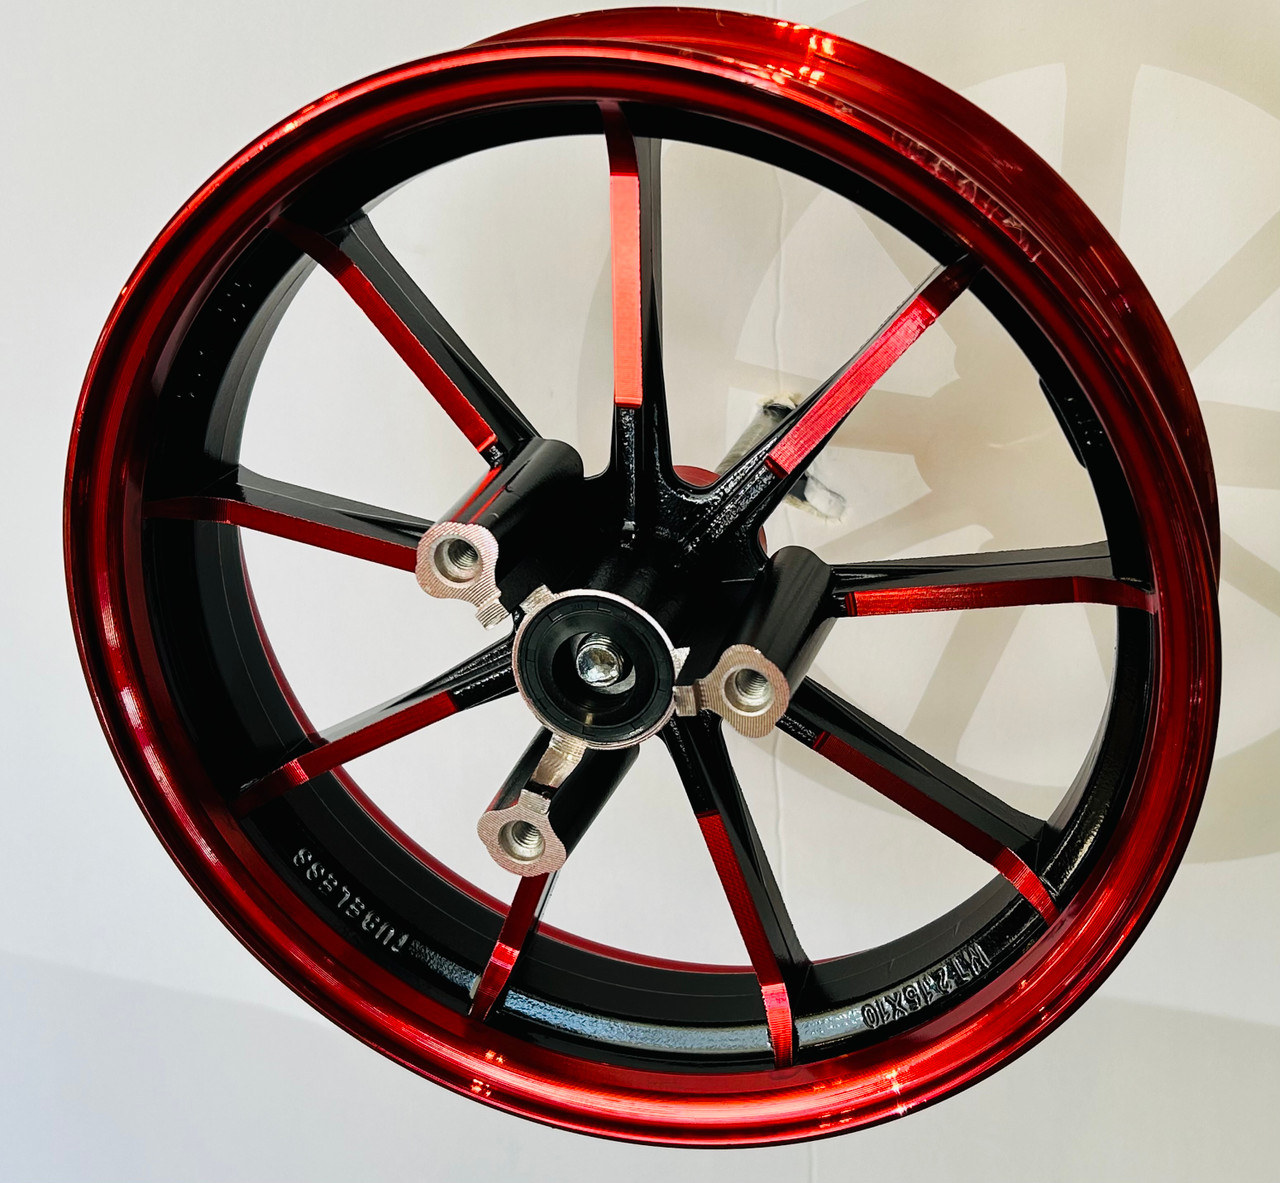 10 Inch mini bike wheel 2.25 inches wide. 12mm bearings red 9 spoke. 